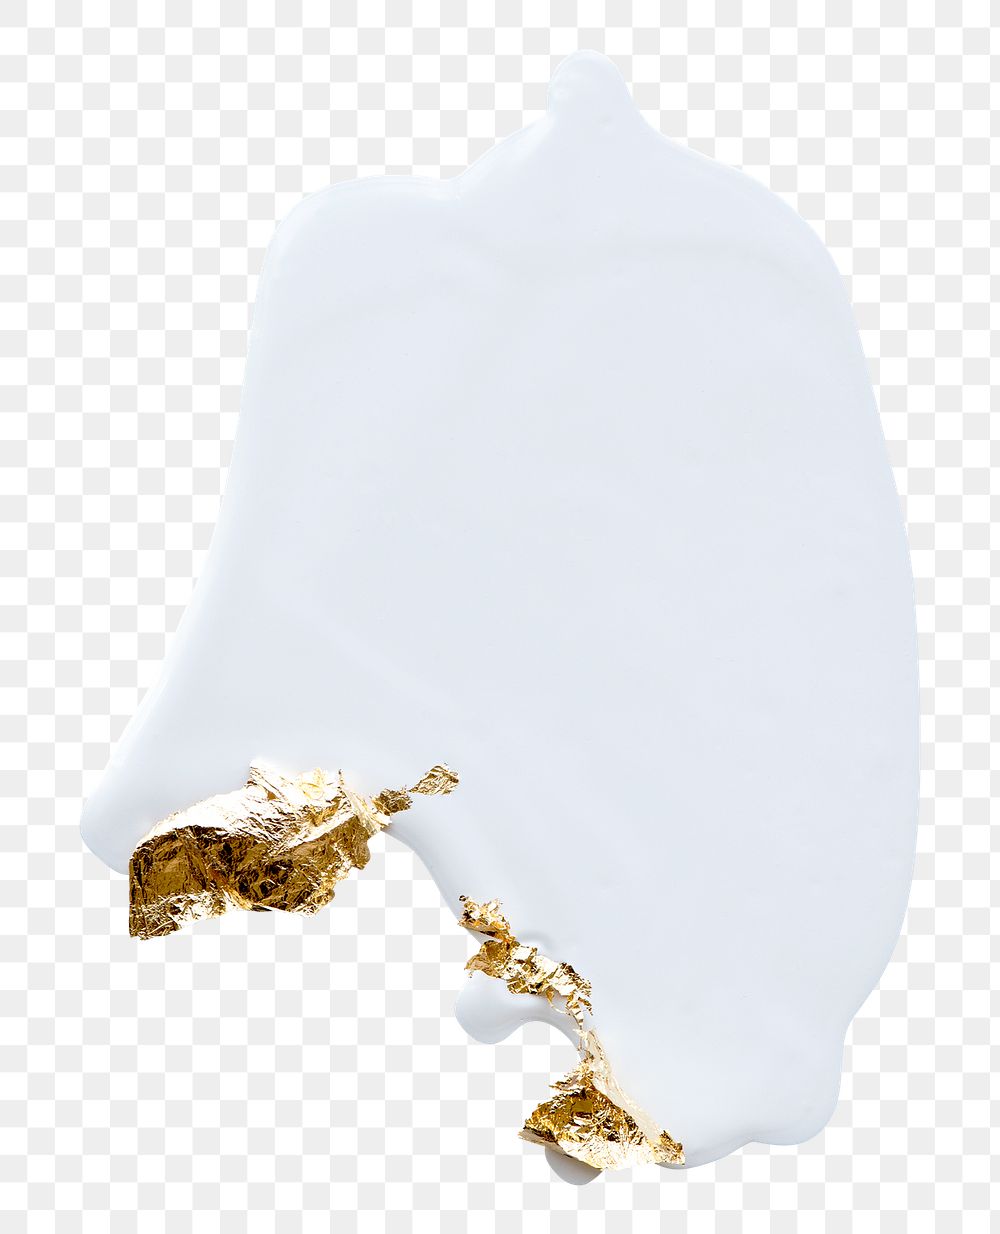 Gold leaf foil on white color element png